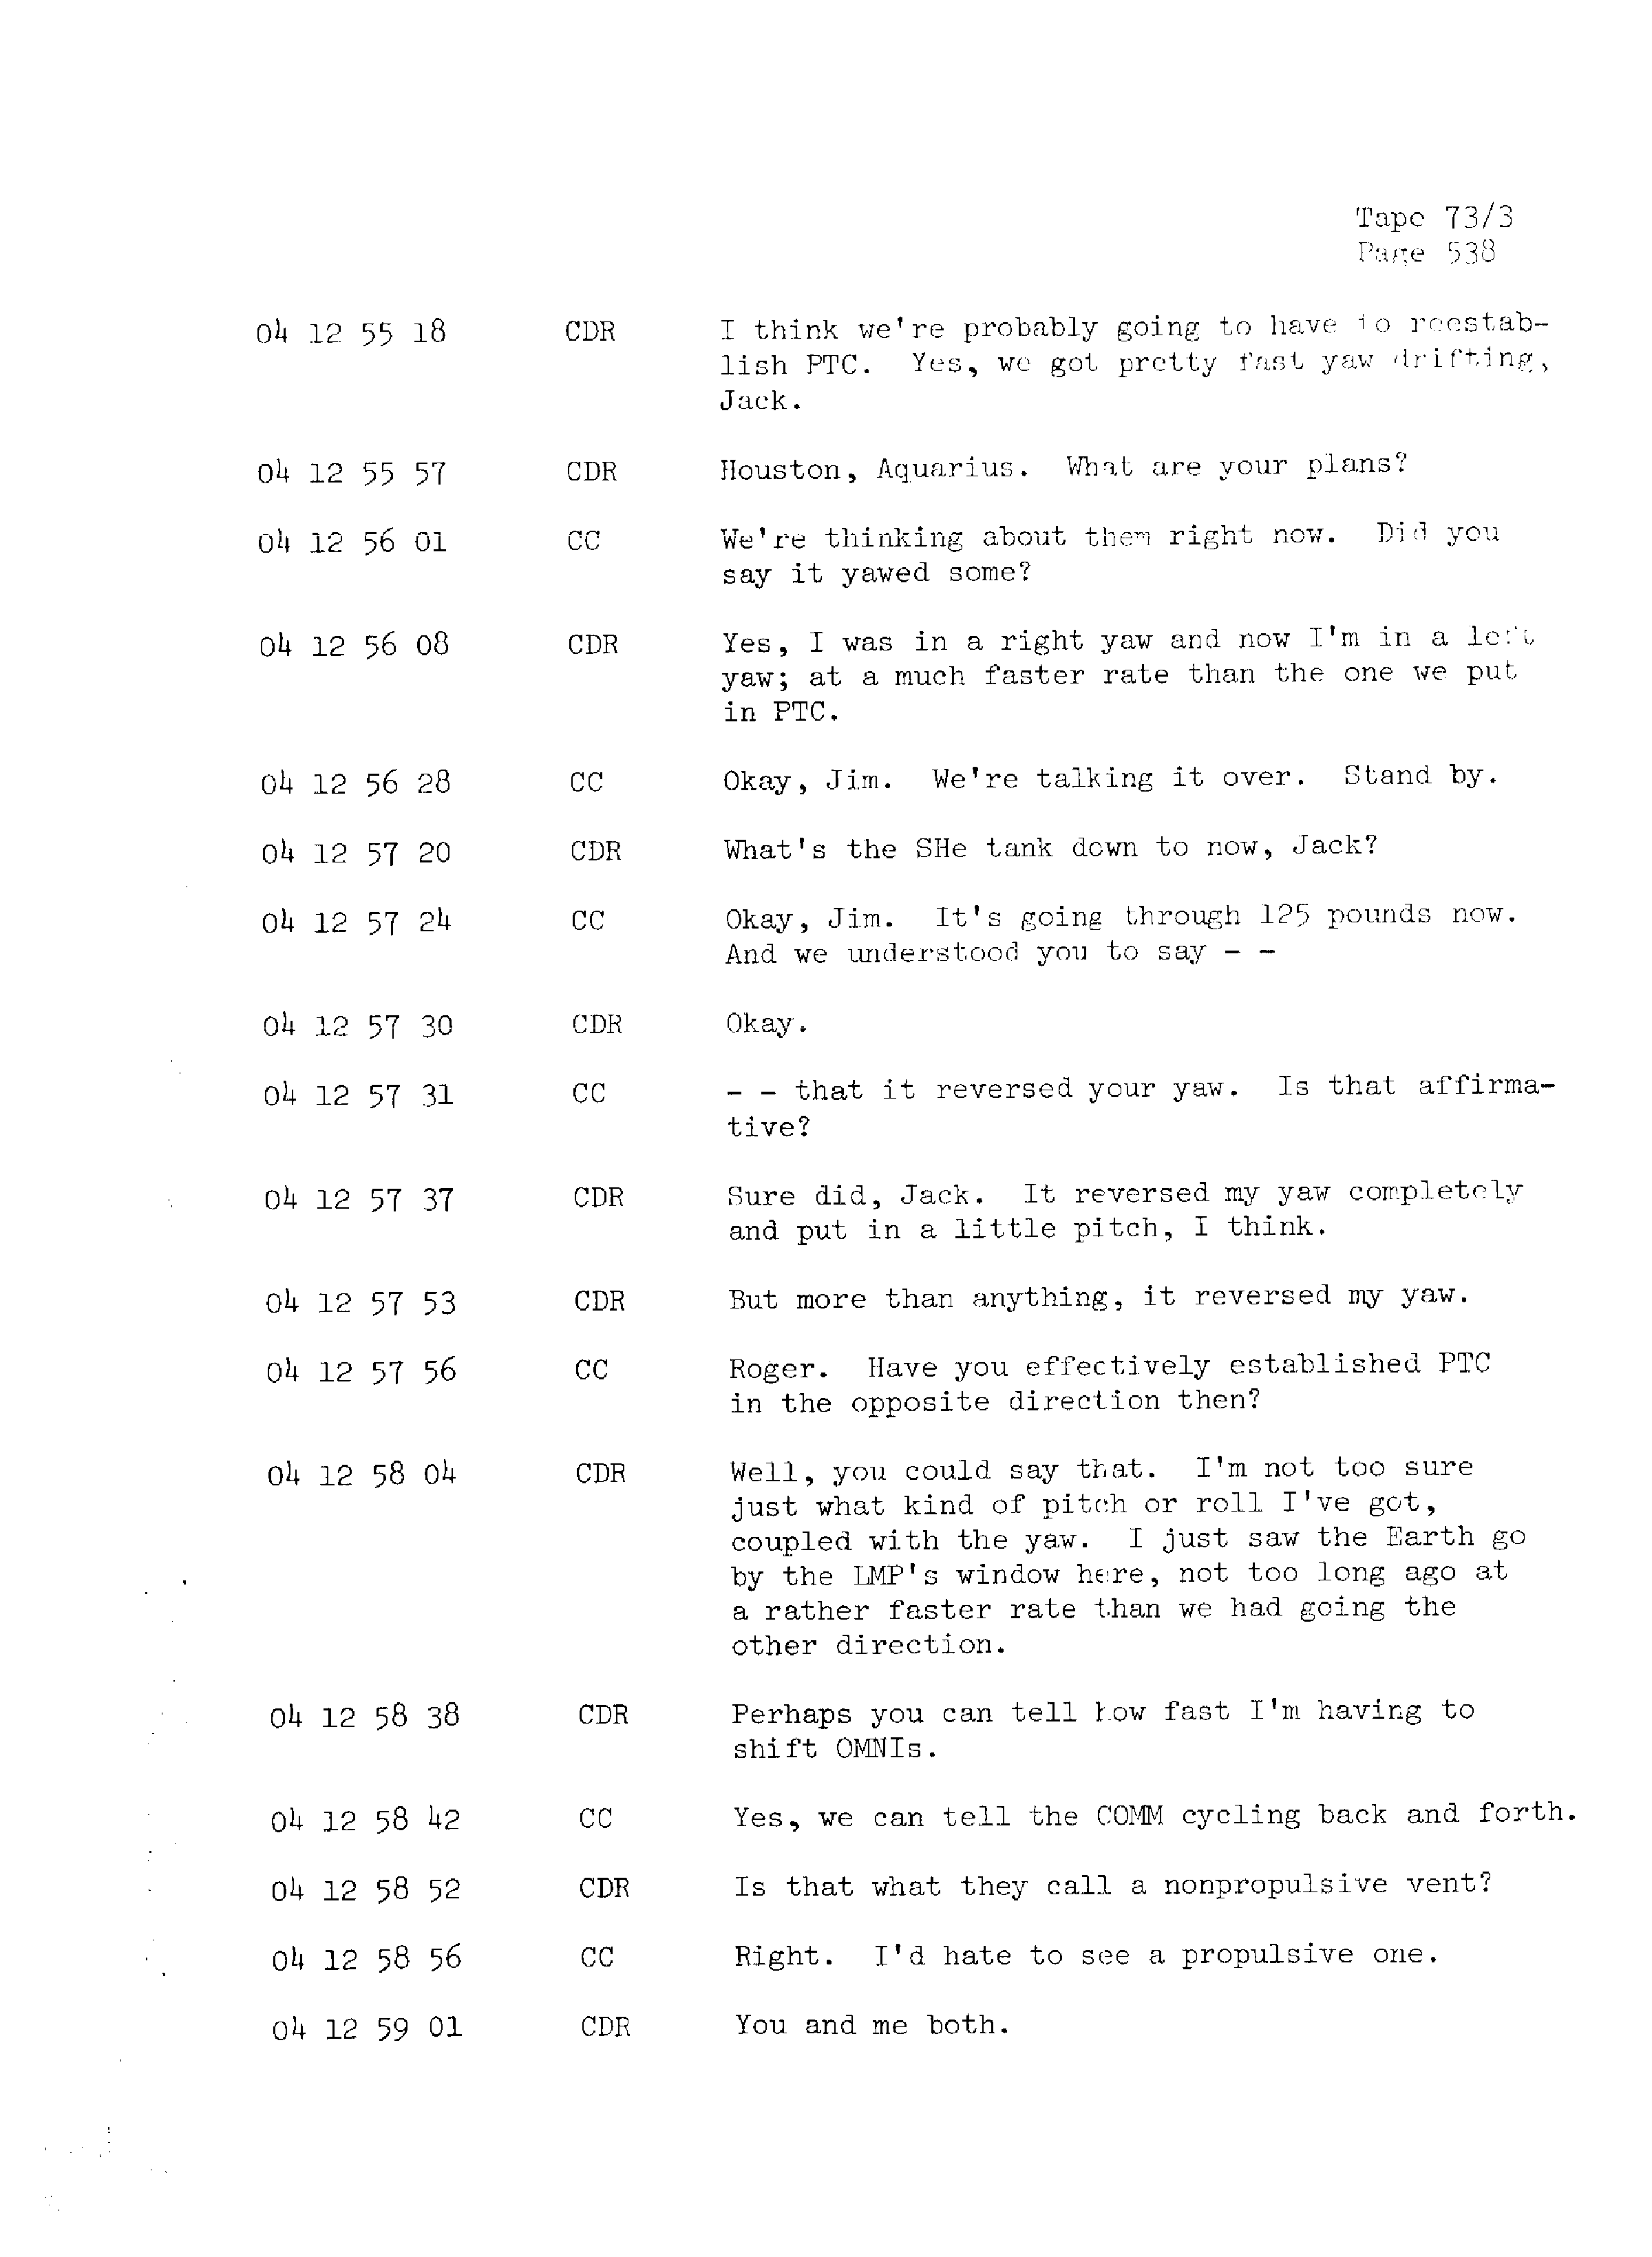 Page 545 of Apollo 13’s original transcript